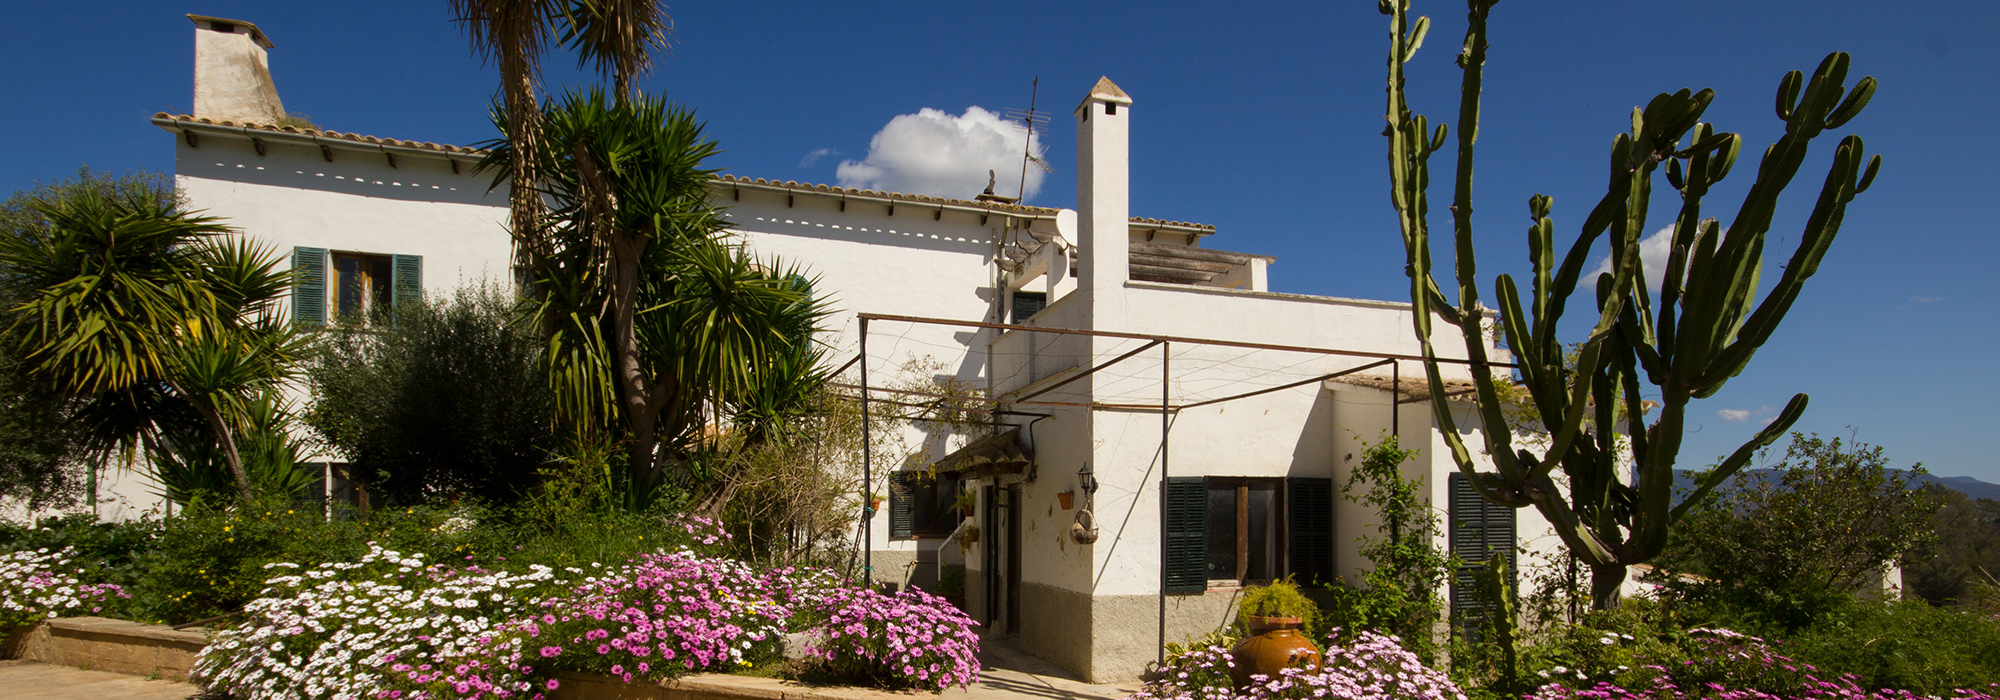 Casa a Reformar con Jardín, Piscina y Vistas Espectaculares a la Montaña en Venta cerca de Palma-uvm180